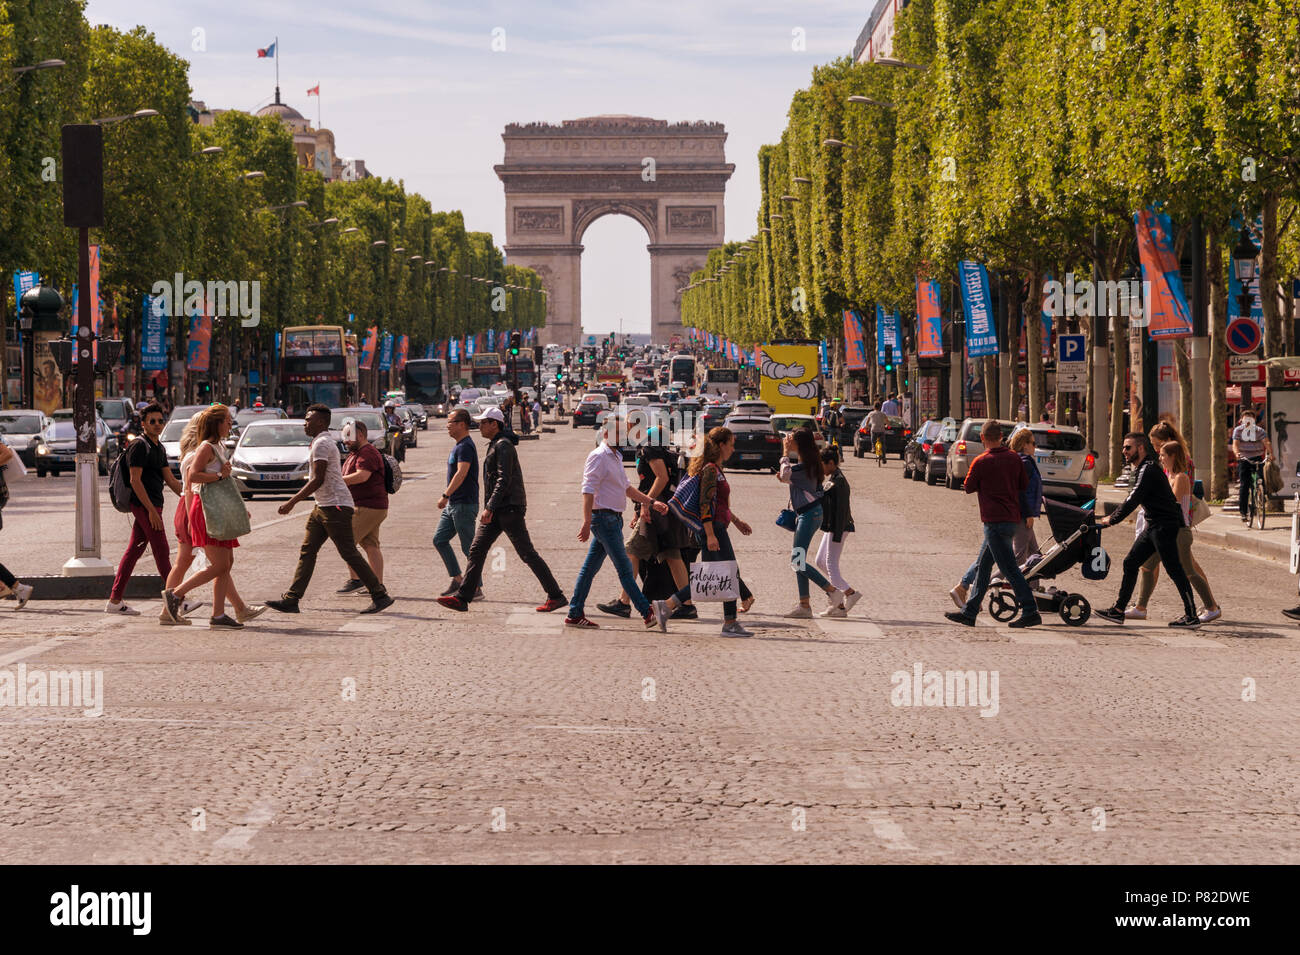 Paris, France - 23 juin 2018 : une foule de personnes traversant l'Avenue des Champs-Elysées avec l'Arc de Triomphe en arrière-plan Banque D'Images